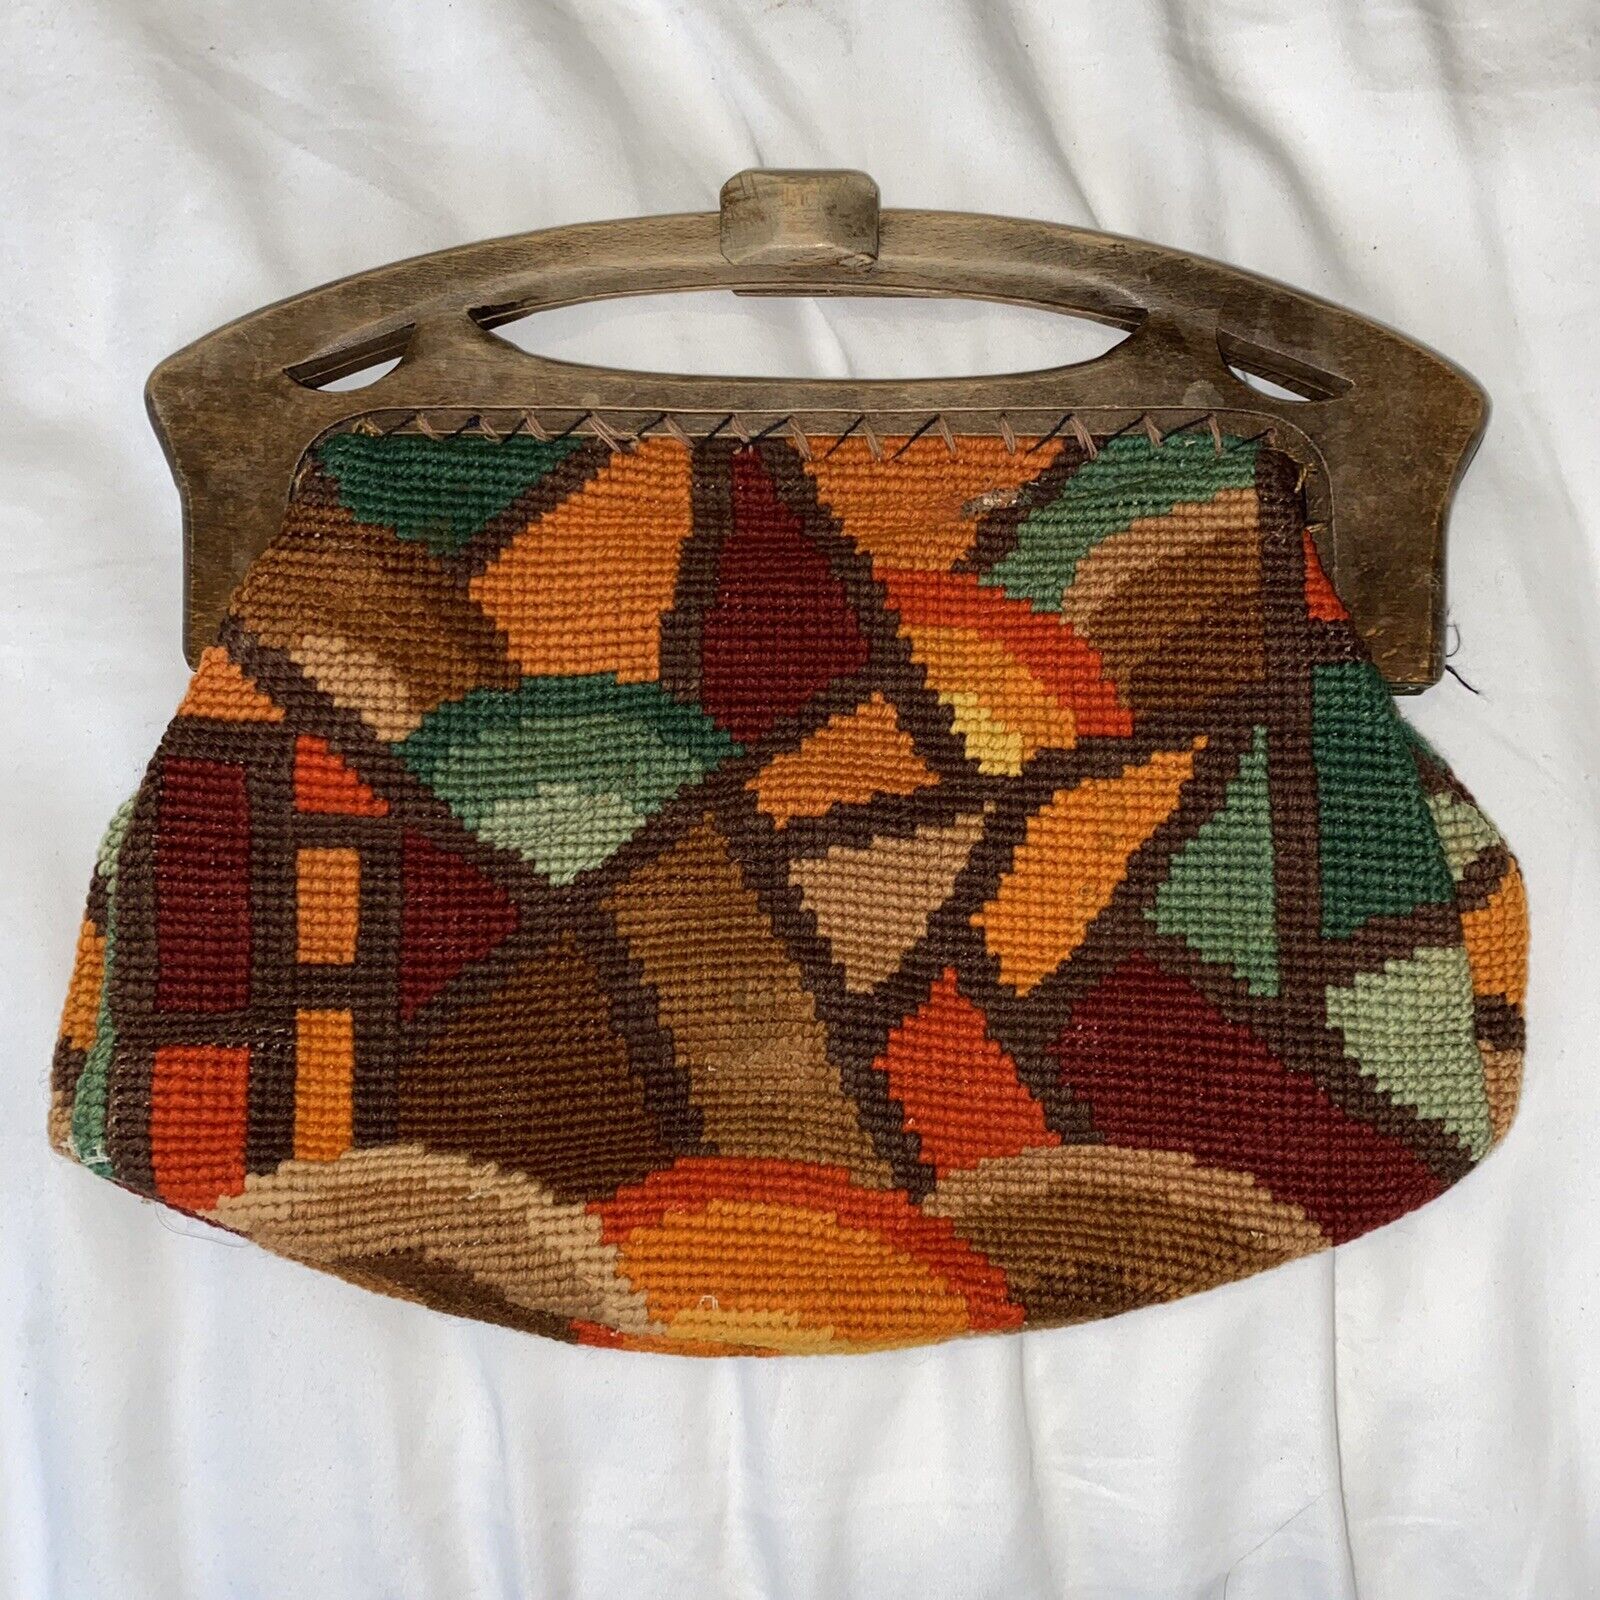 Vintage - Art Deco - Crochet handbag - wooden handle - multicoloured